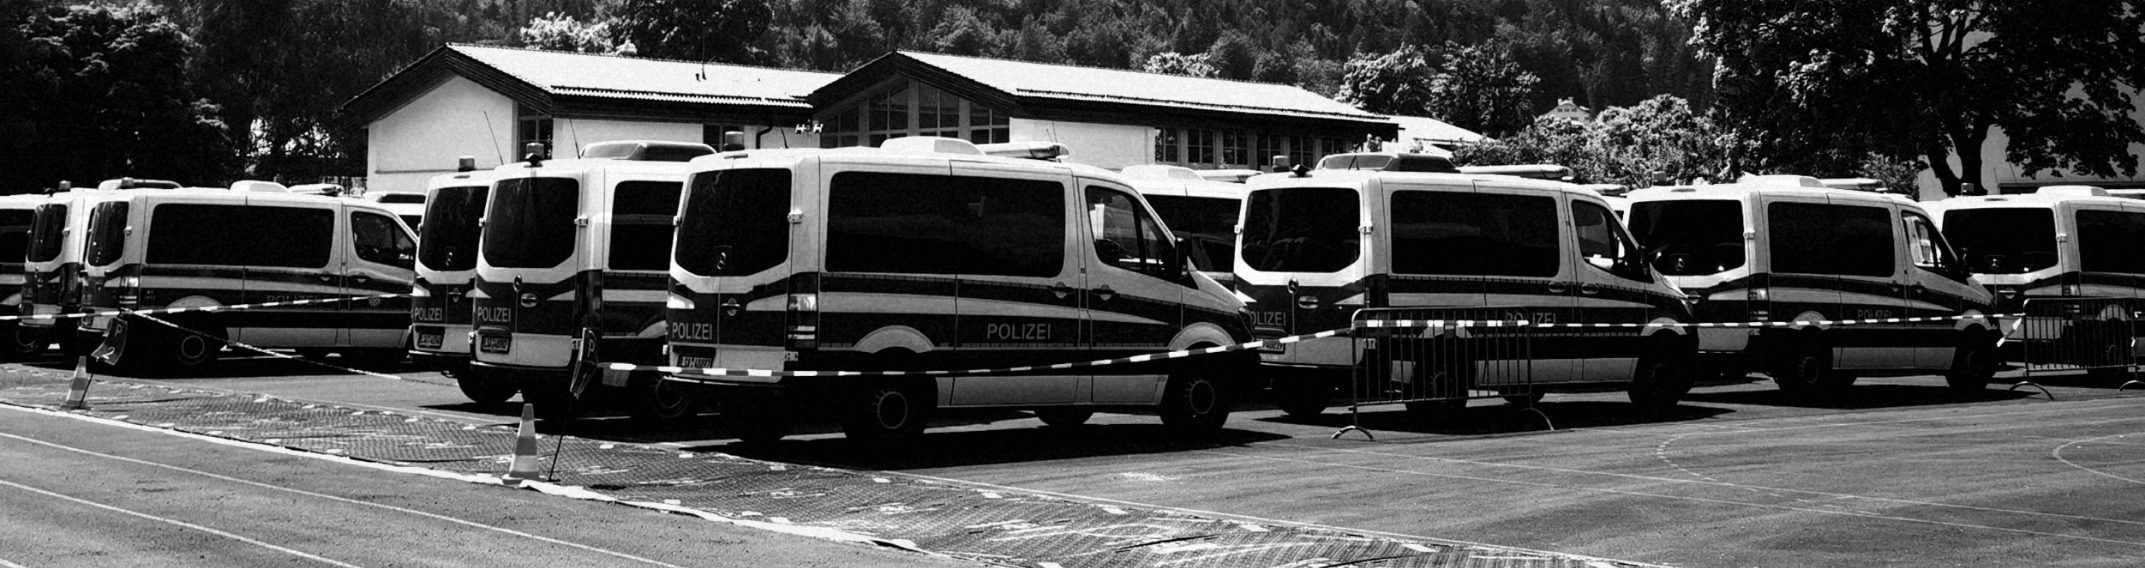 Read more about the article Eilmeldung: 8 Polizeibusse in München in Flammen